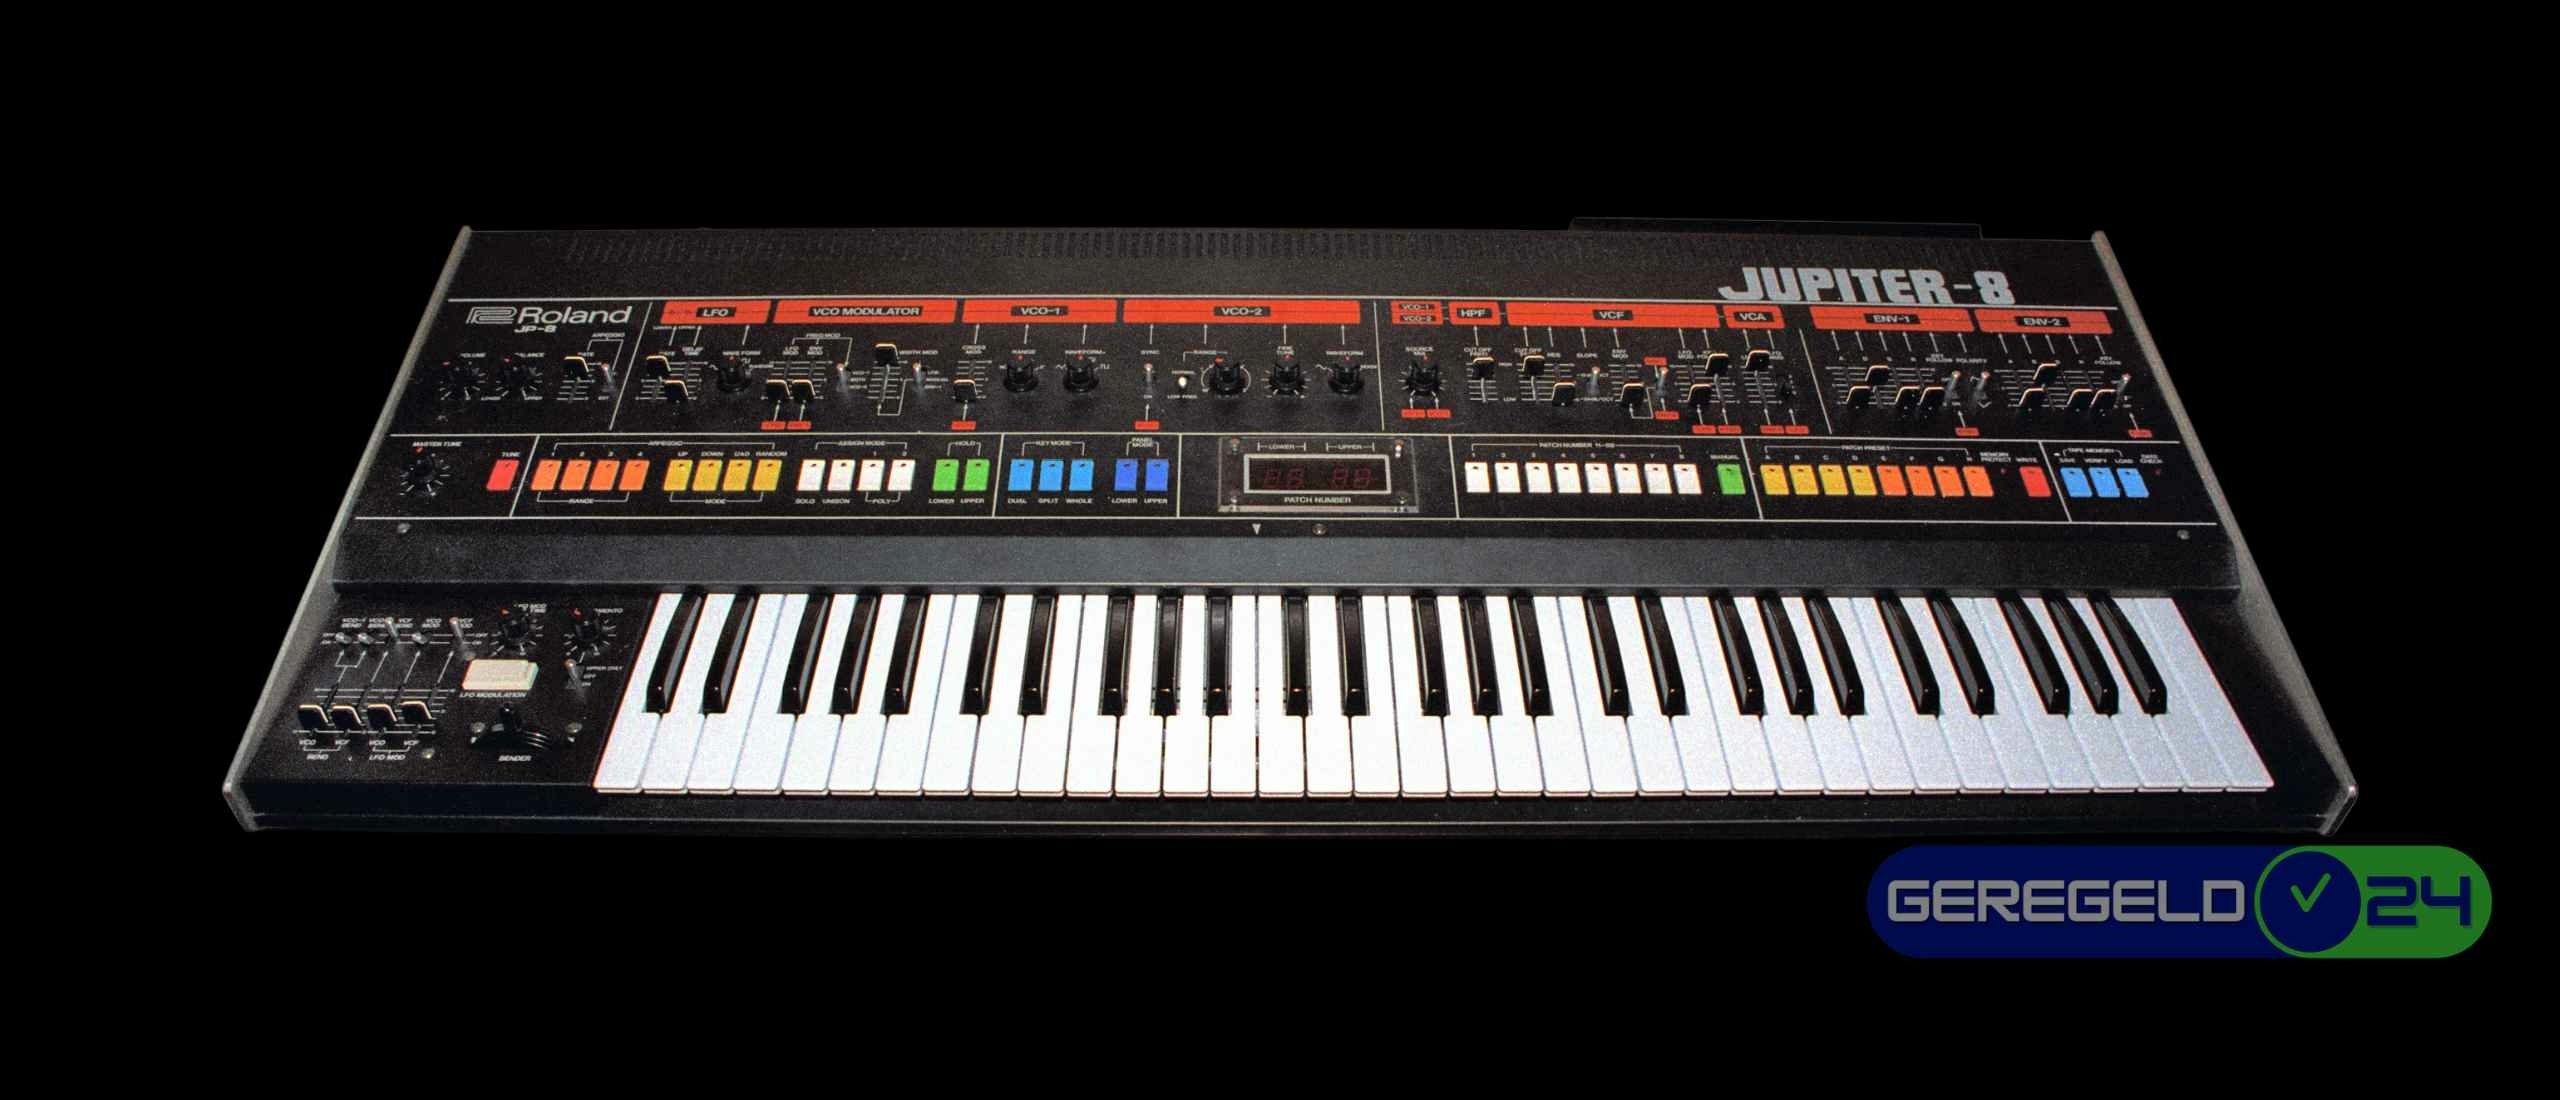 De Roland Jupiter-8: Een iconische synthesizer die de geschiedenis van muziekproductie heeft gevormd